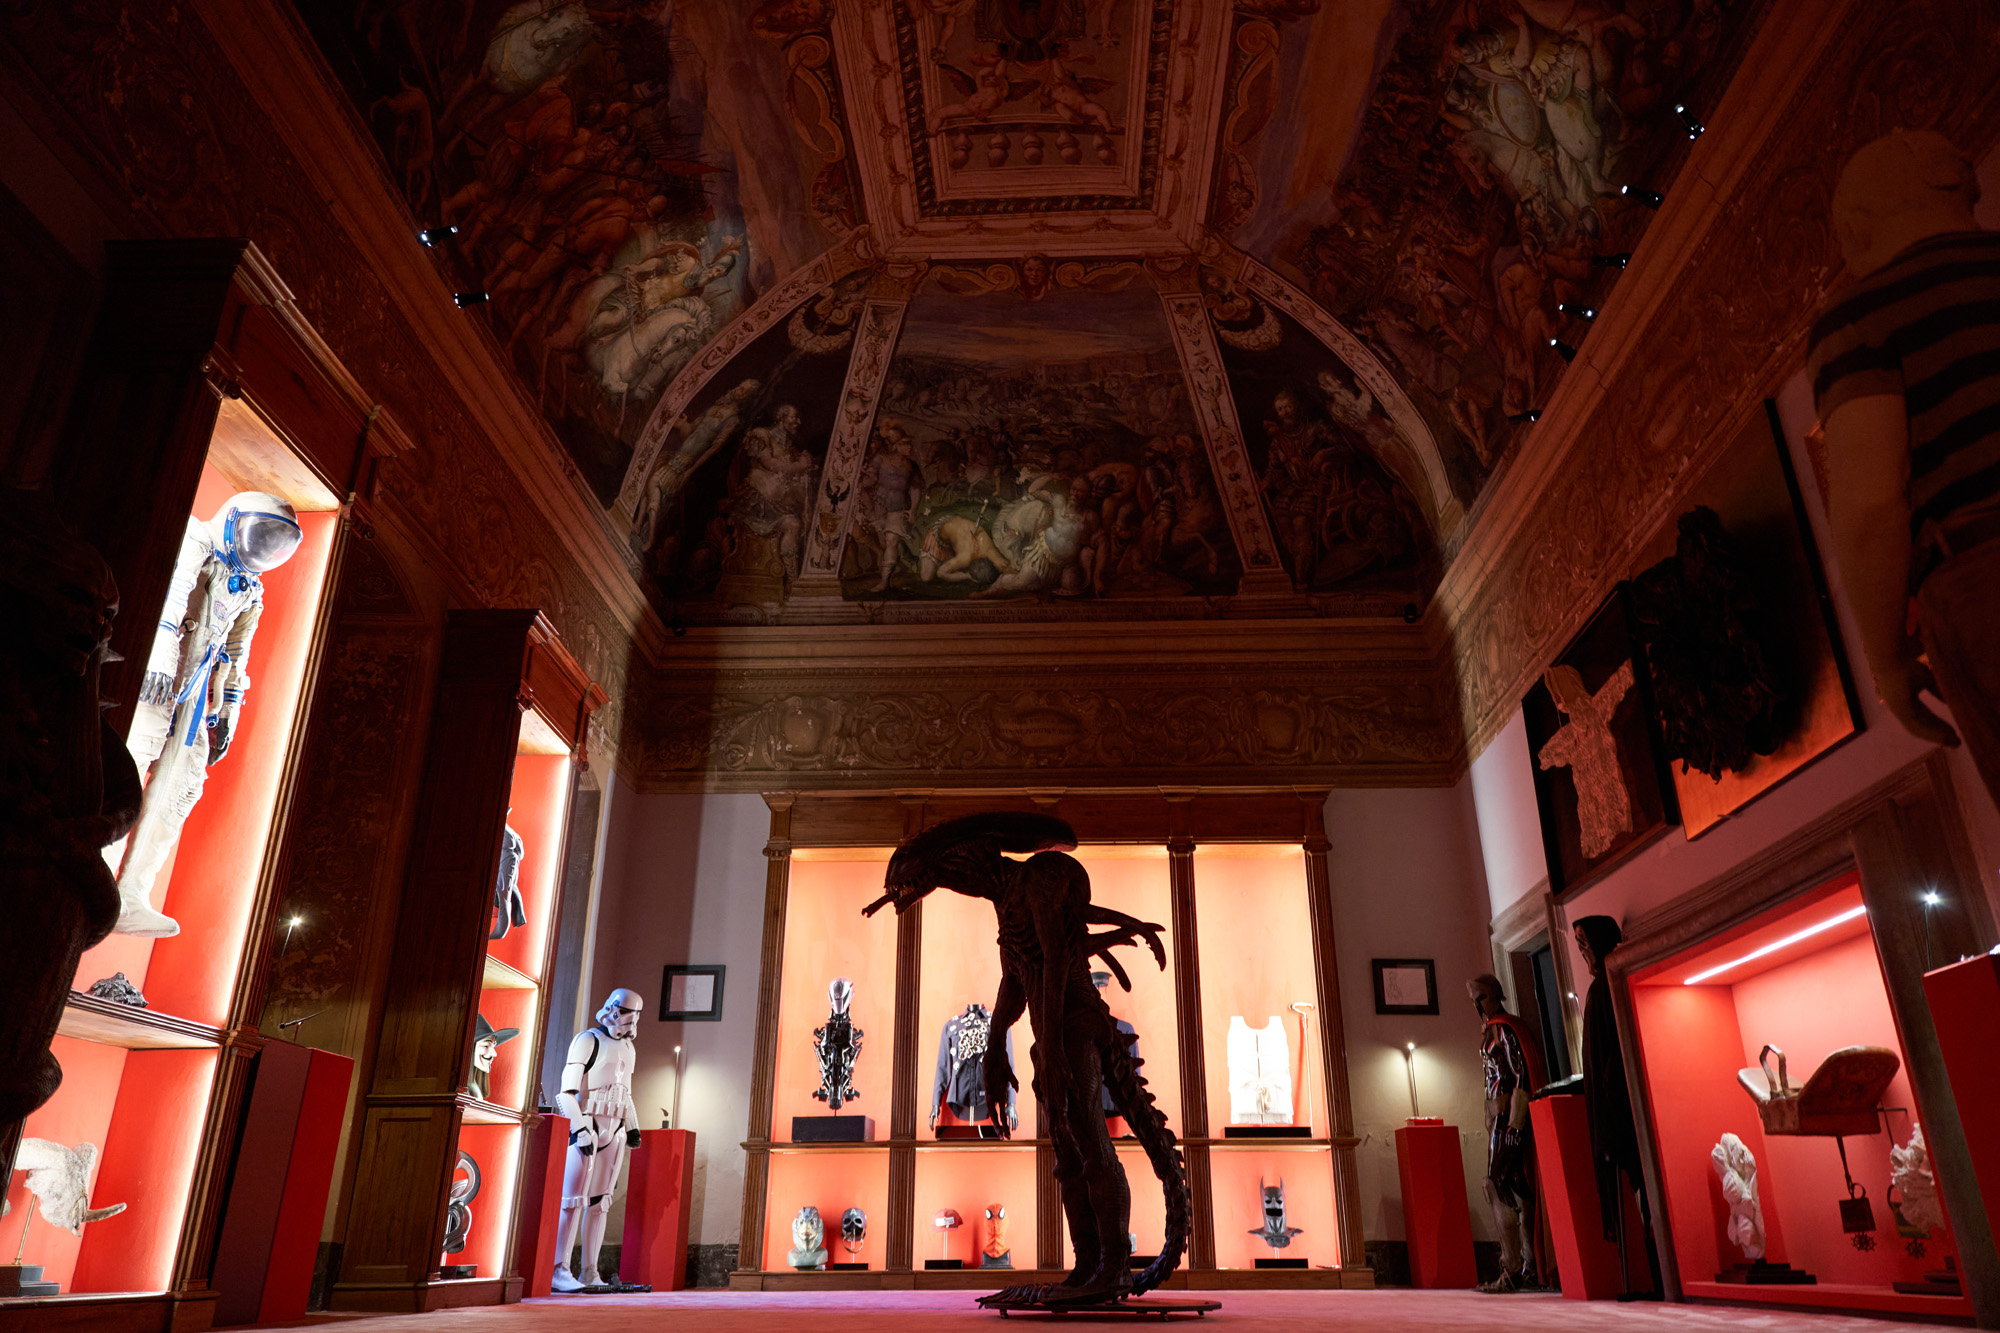 Ruangan galeri bernuansa merah dan putih memamerkan patung alien, karakter Star Wars dan baju astronot